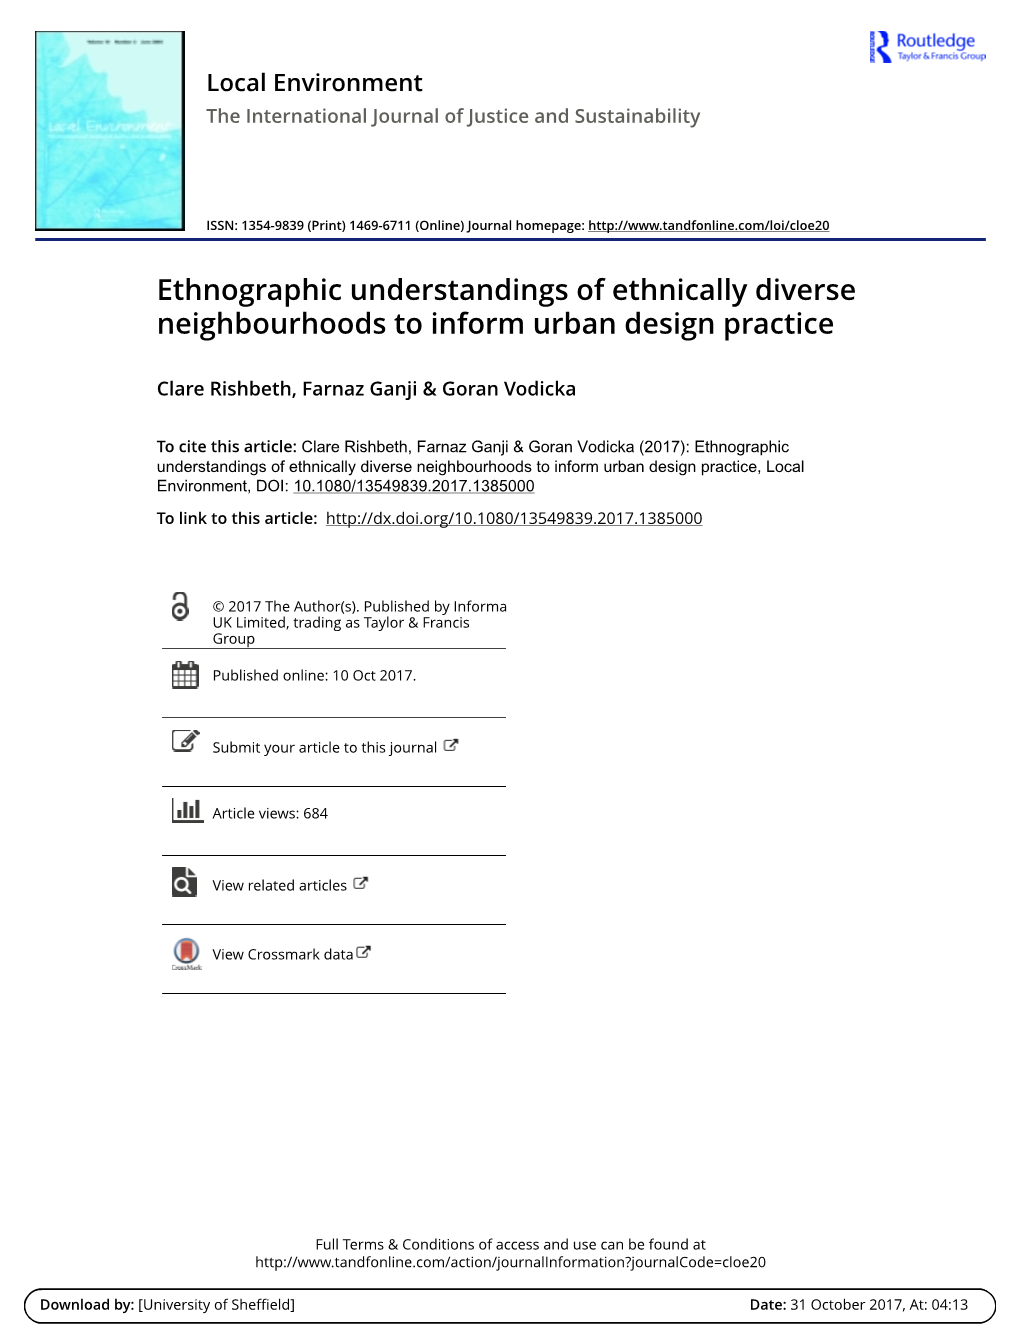 Ethnographic Understandings of Ethnically Diverse Neighbourhoods to Inform Urban Design Practice